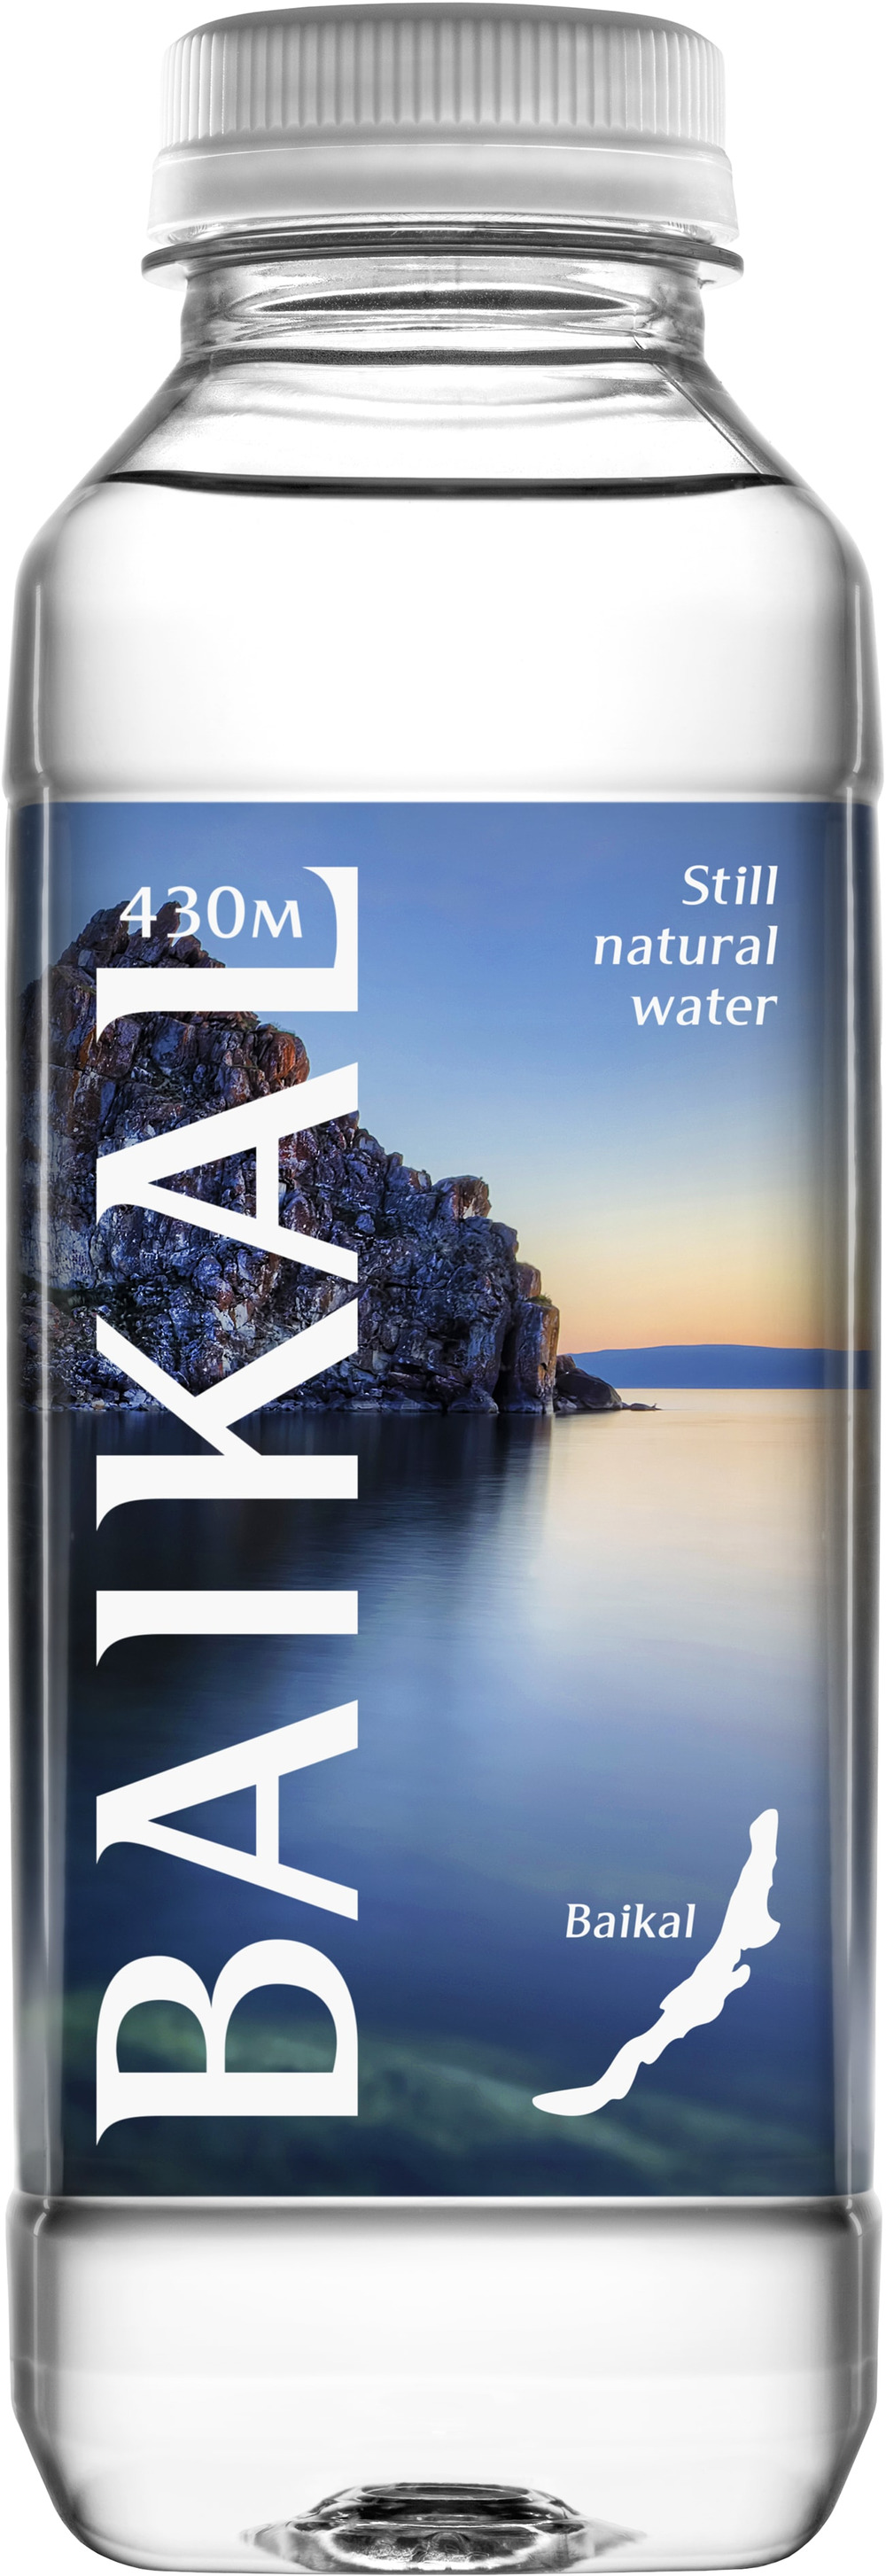 Вода байкал москва. Природная питьевая вода Байкальская глубинная baikal430 ПЭТ. Baikal 430 вода. Вода питьевая Байкальская глубинная baikal430 негаз. 0.45 Л ПЭТ (12шт/уп). Вода Байкал 430 0.45.